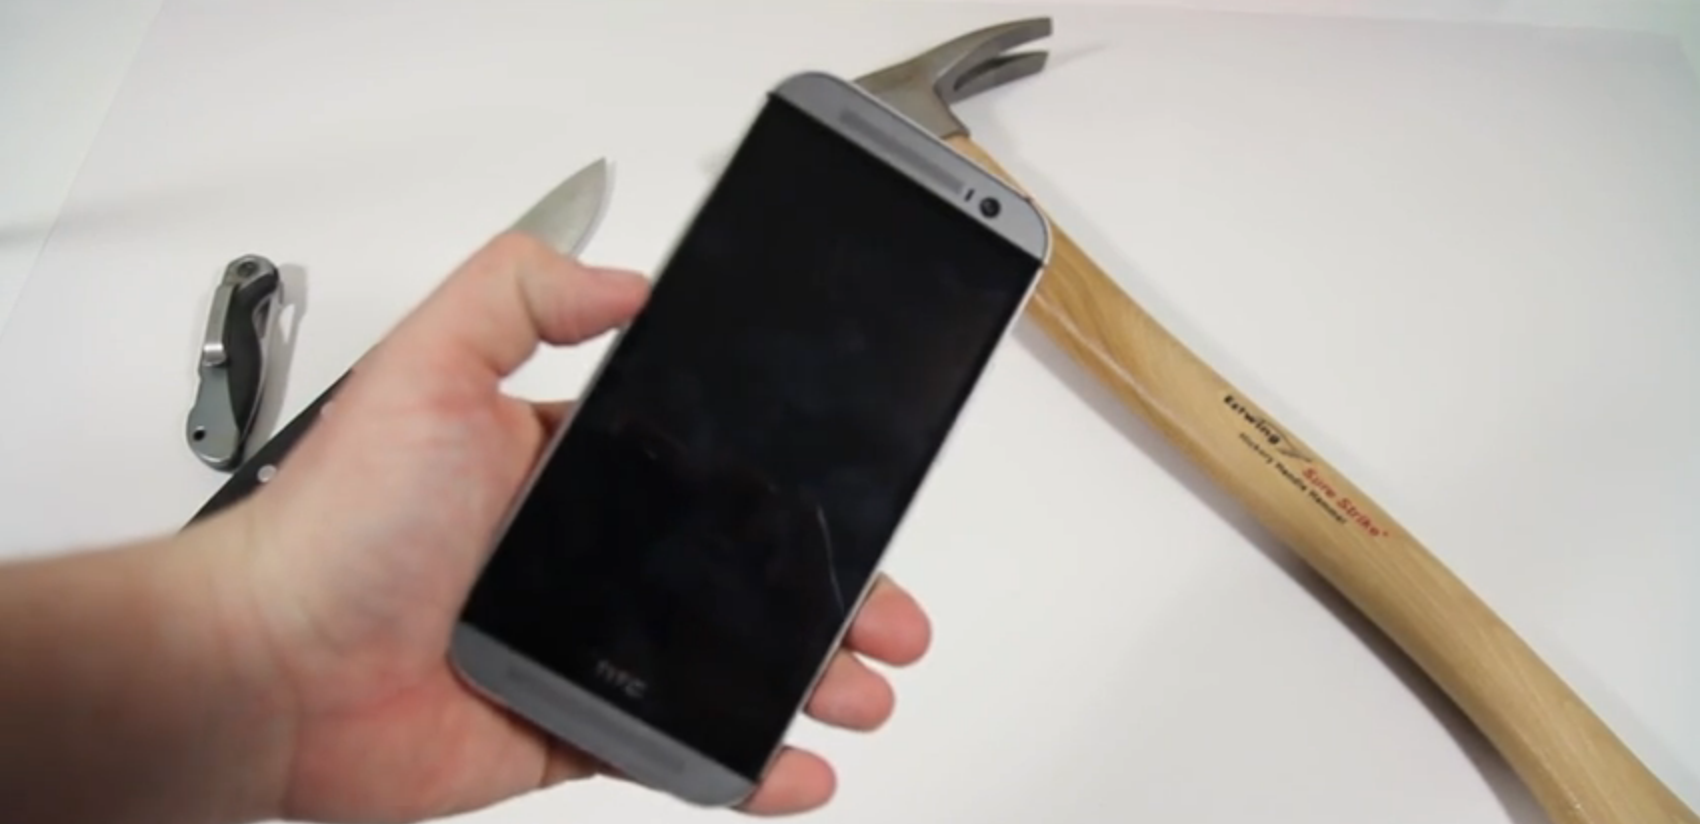 HTC One M8 getest op robuustheid in verschillende tests